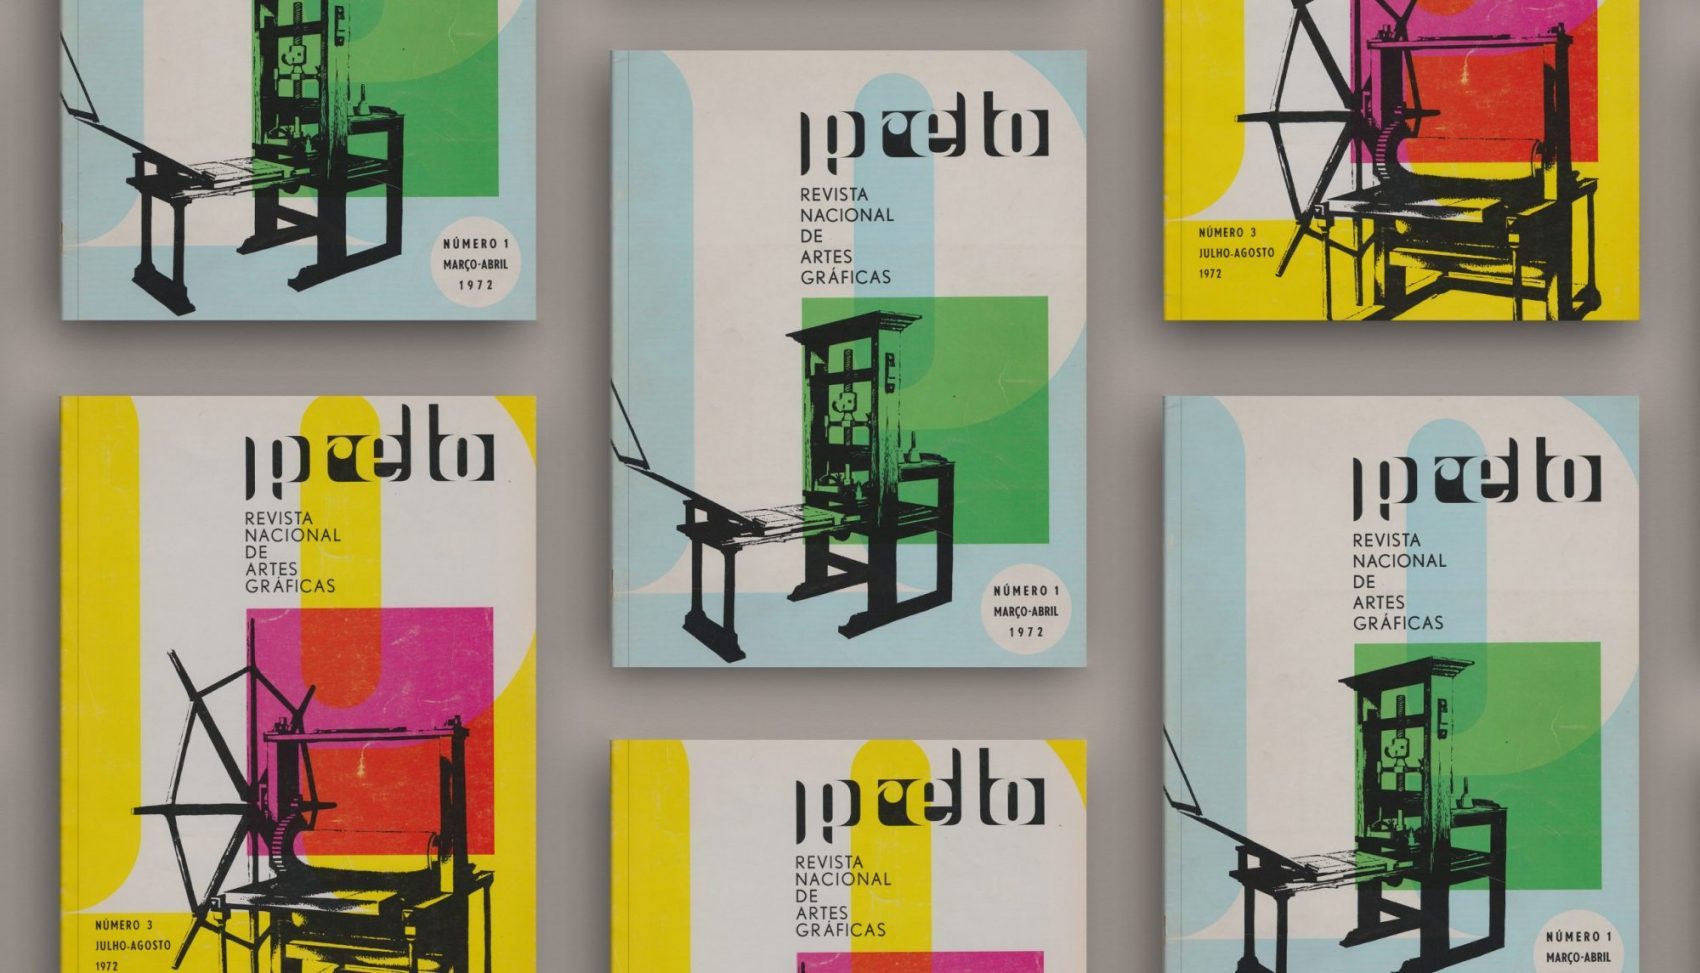 Imprensa Nacional reforça projeto editorial digital, disponibilizando gratuitamente a histórica revista Prelo